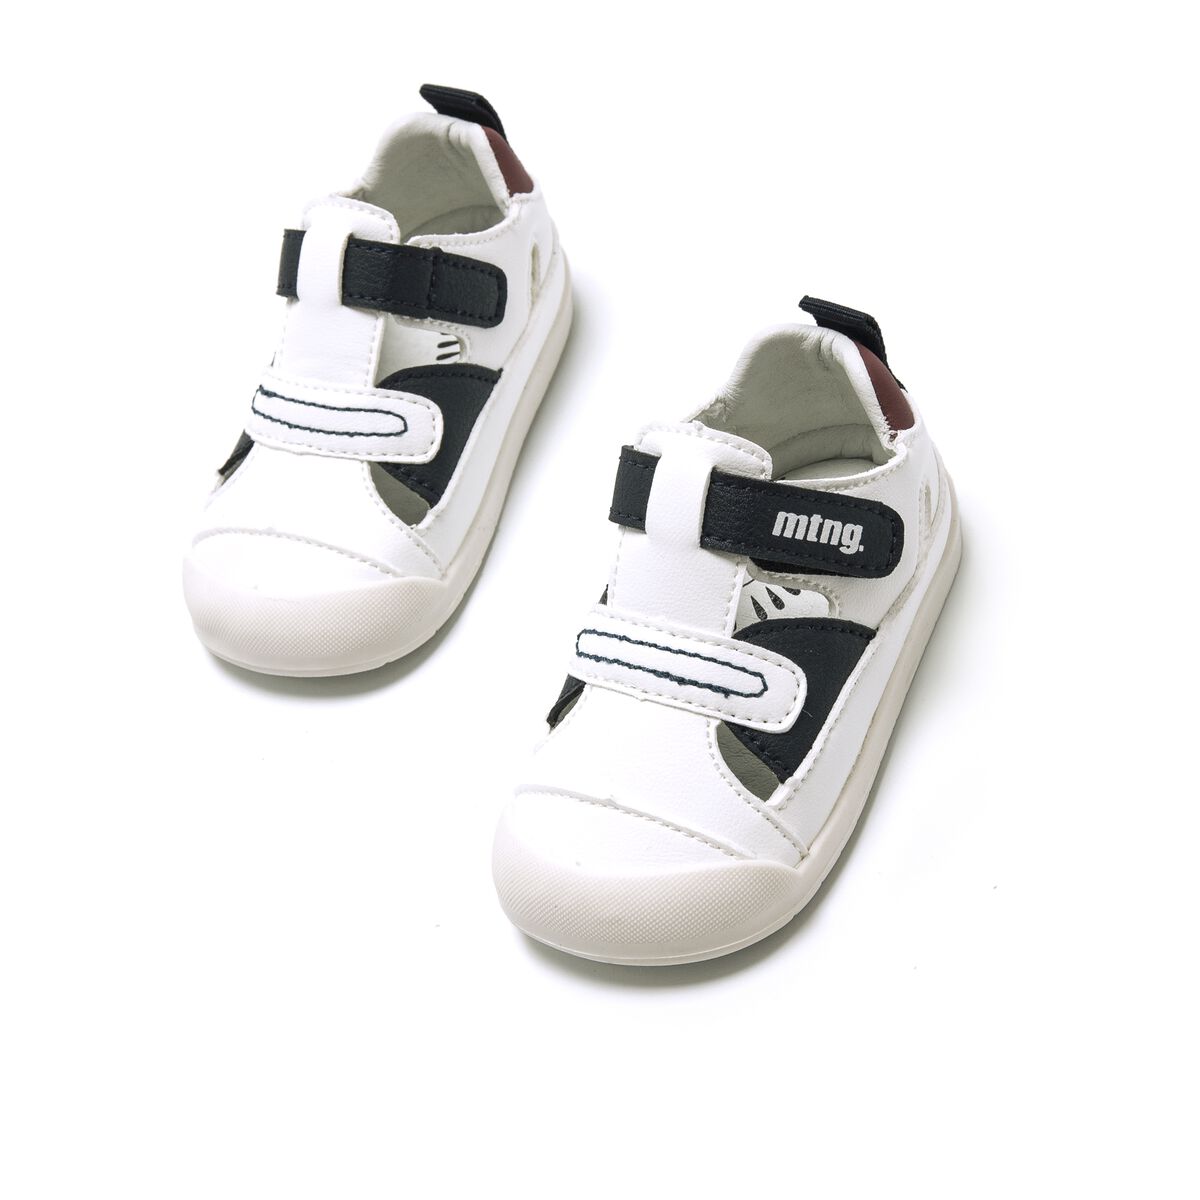 Zapatillas de Nino modelo FREE BABY de MTNG image number 2